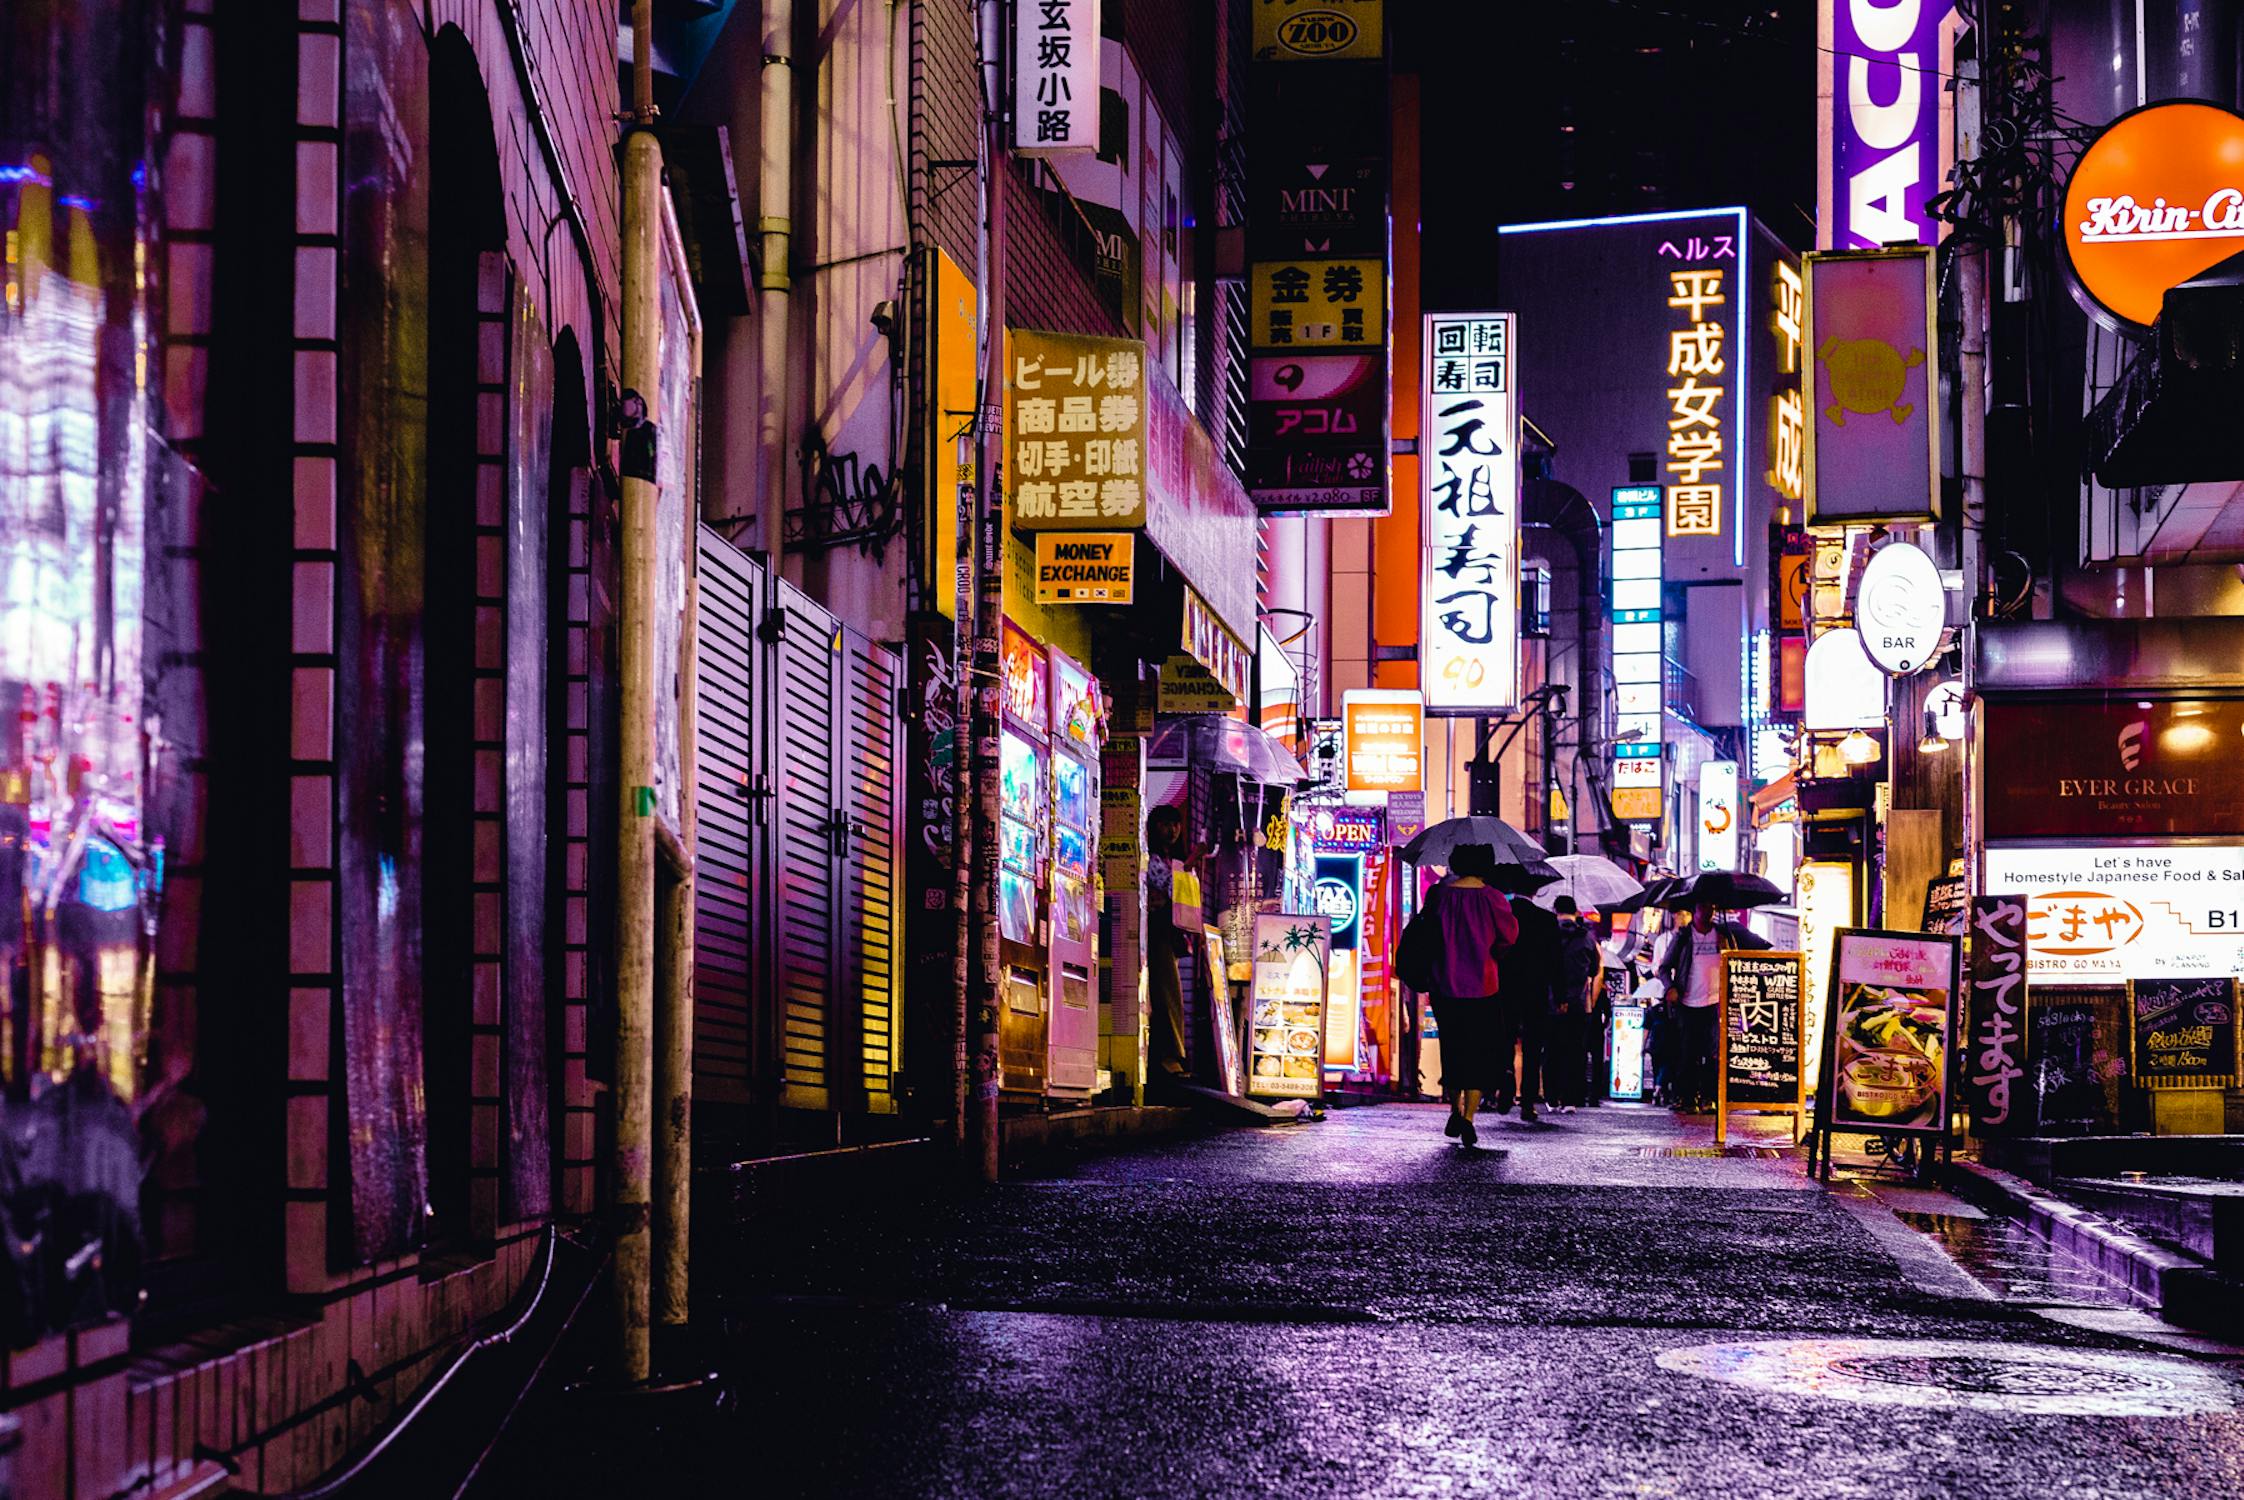 A Tokyo street at night